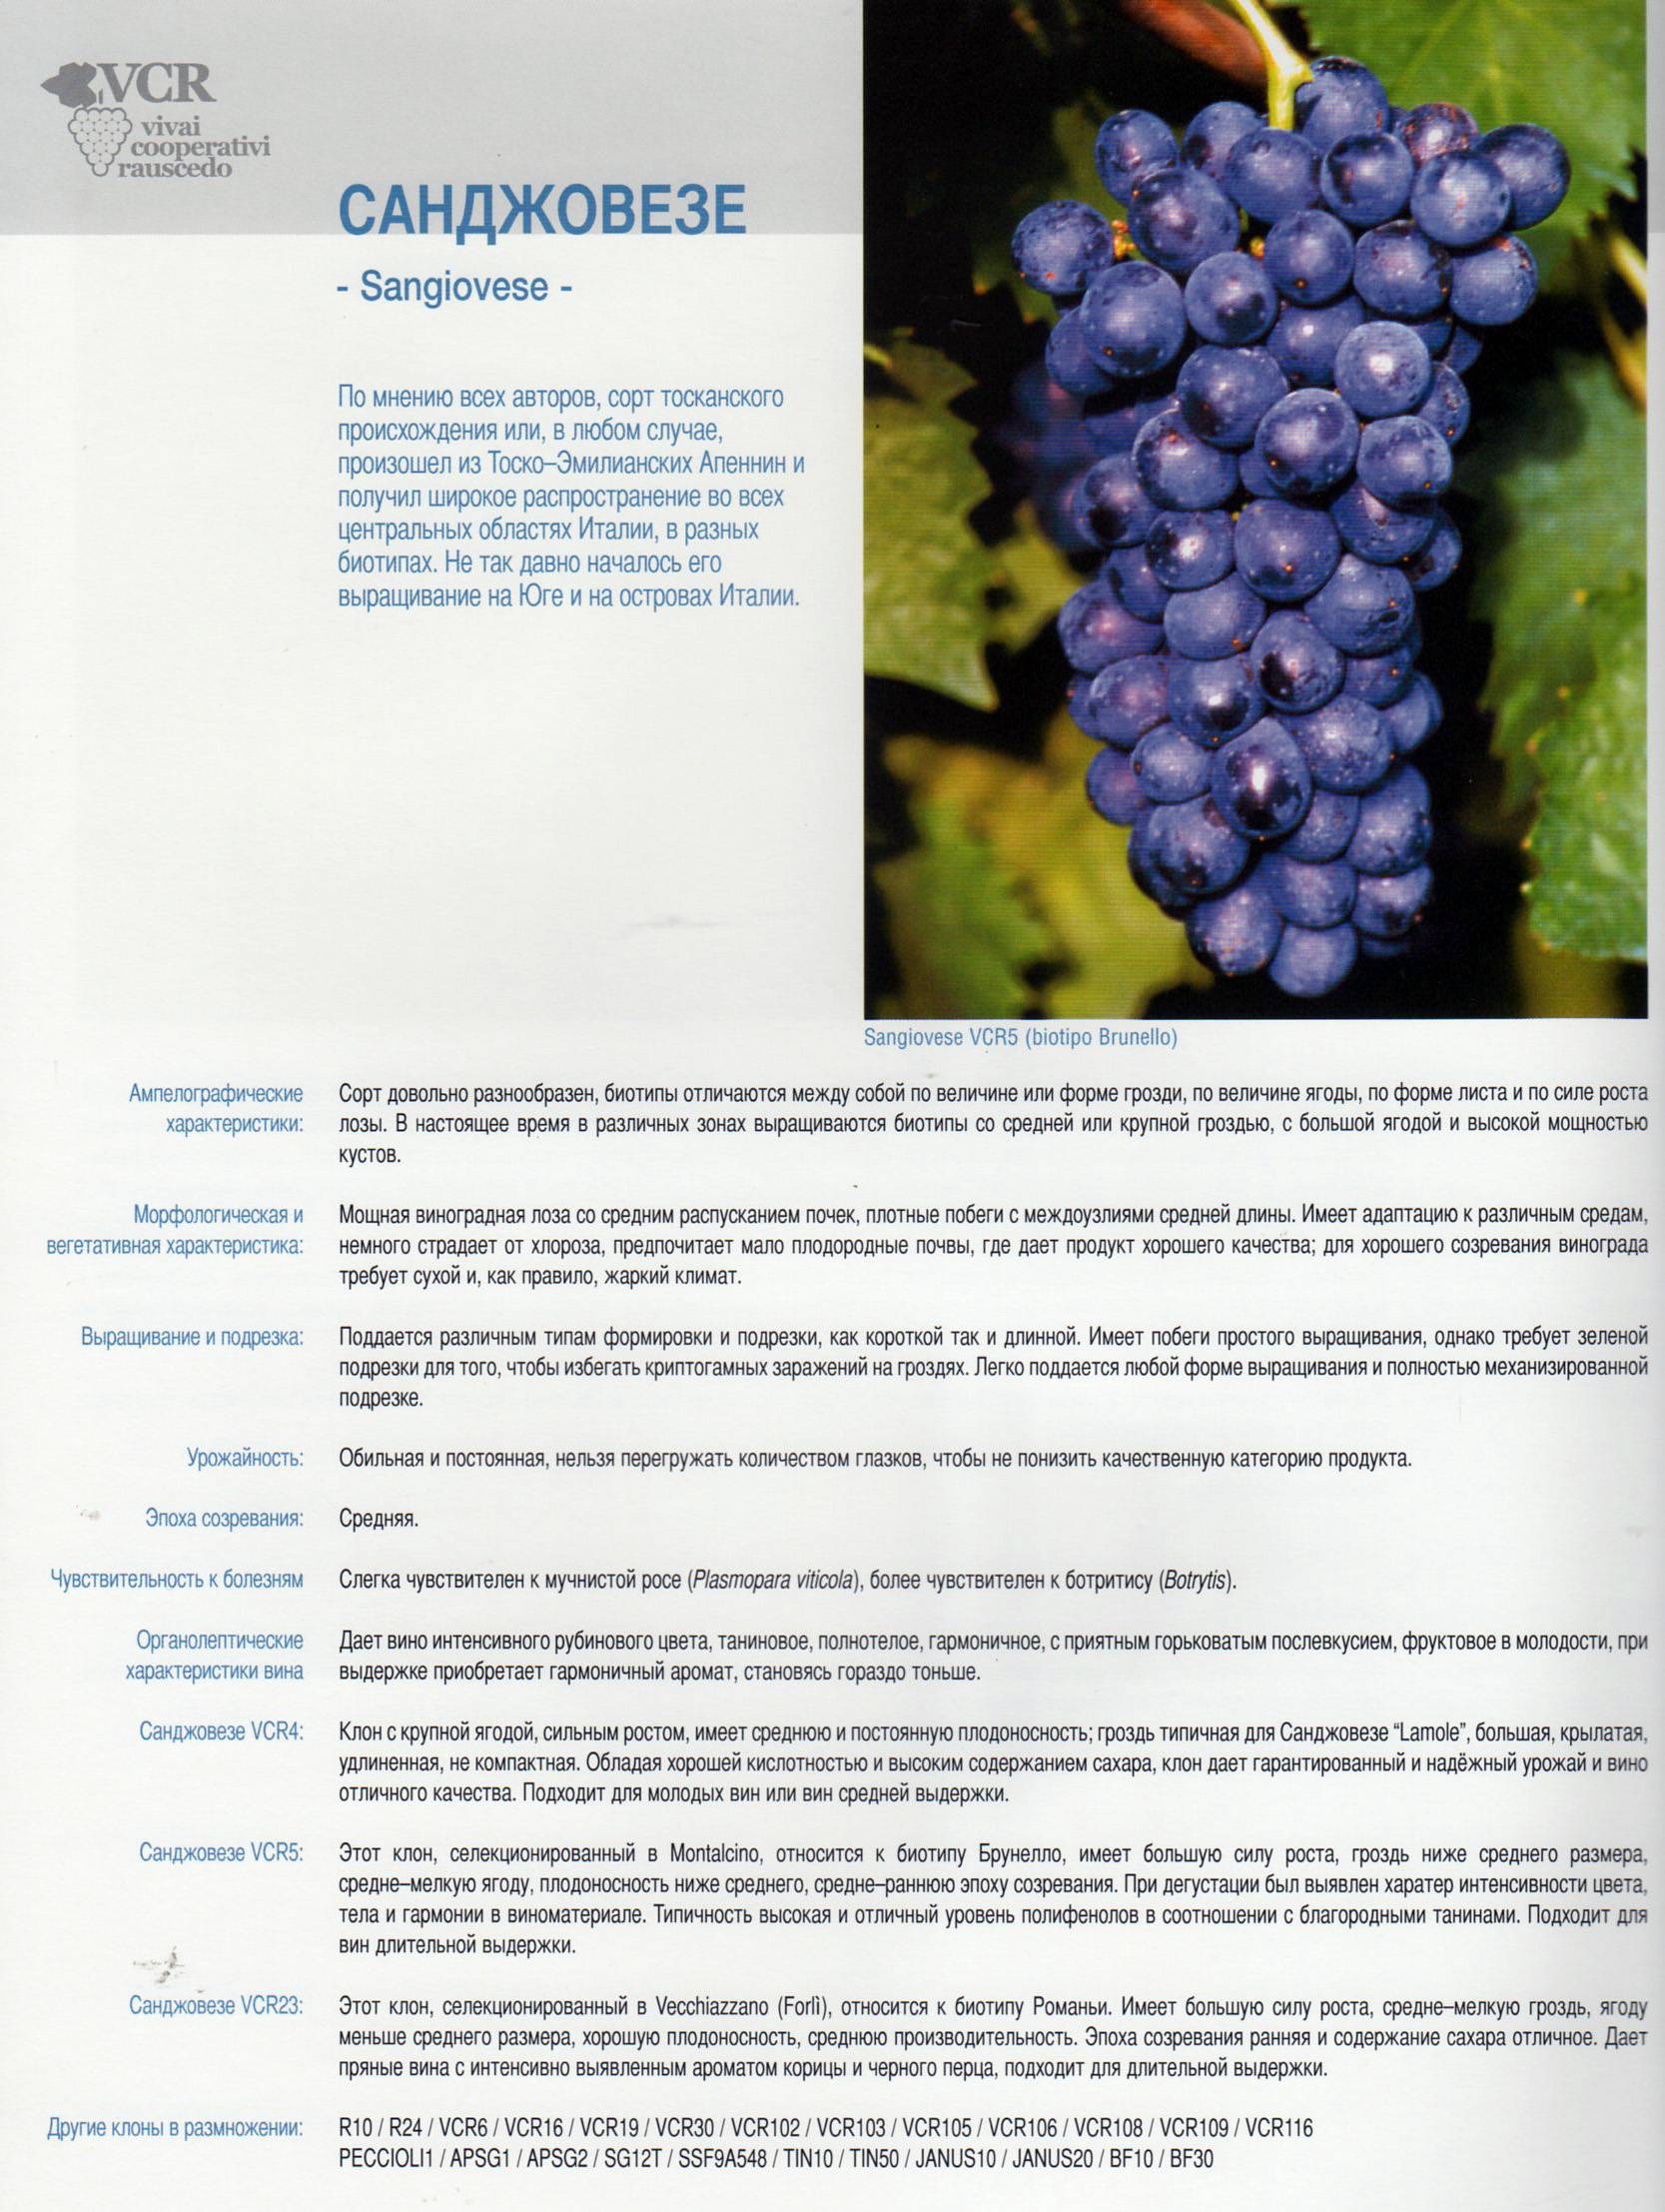 Описание сорта винограда Шардоне, правила посадки и ухода